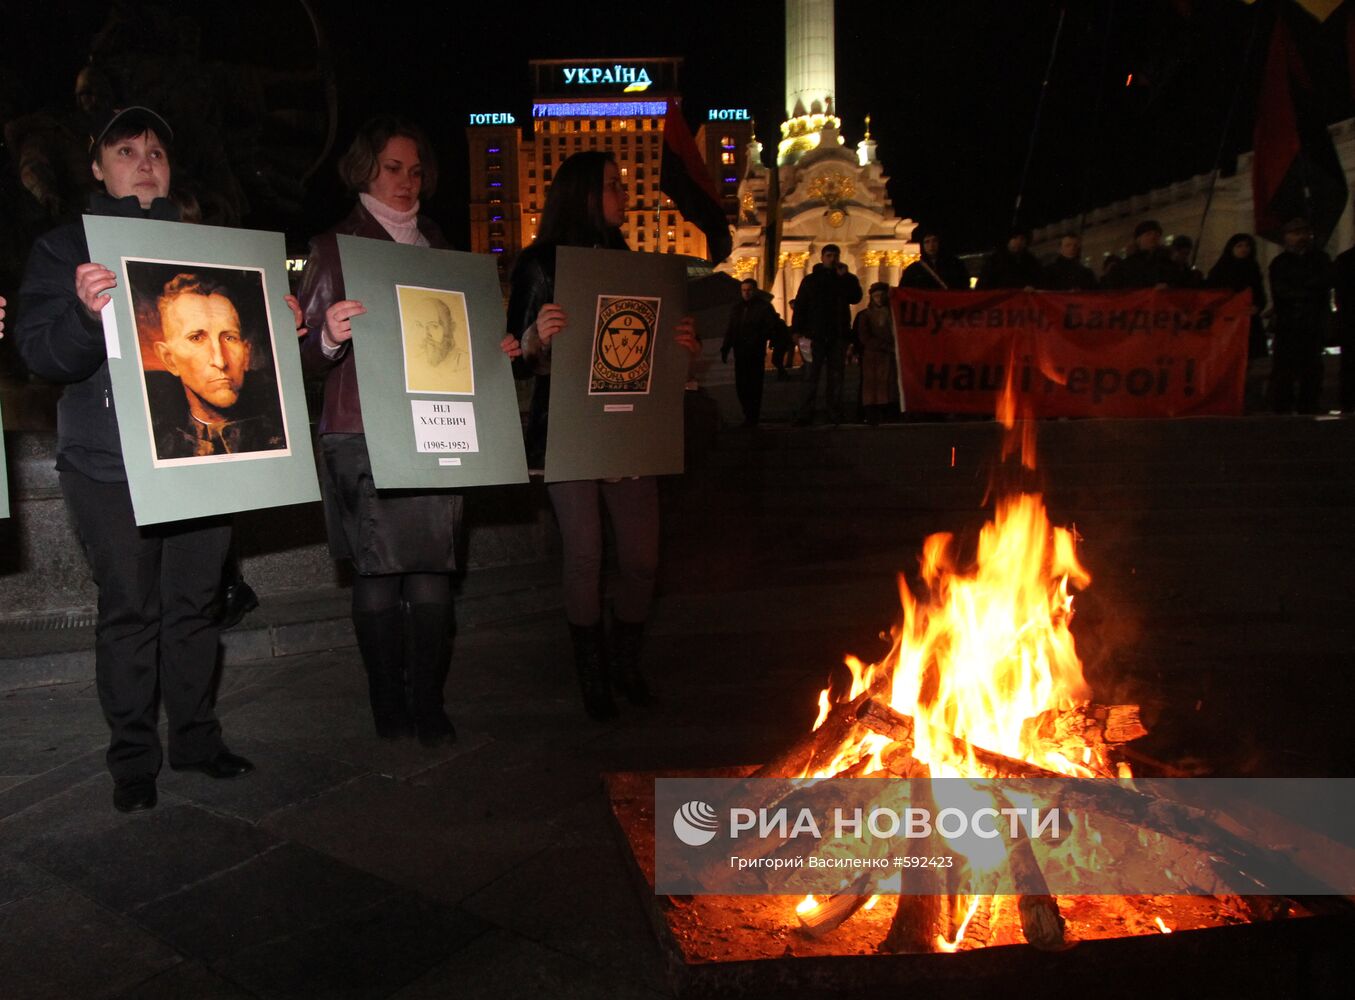 Шествие в память командира УПА состоялось в Киеве